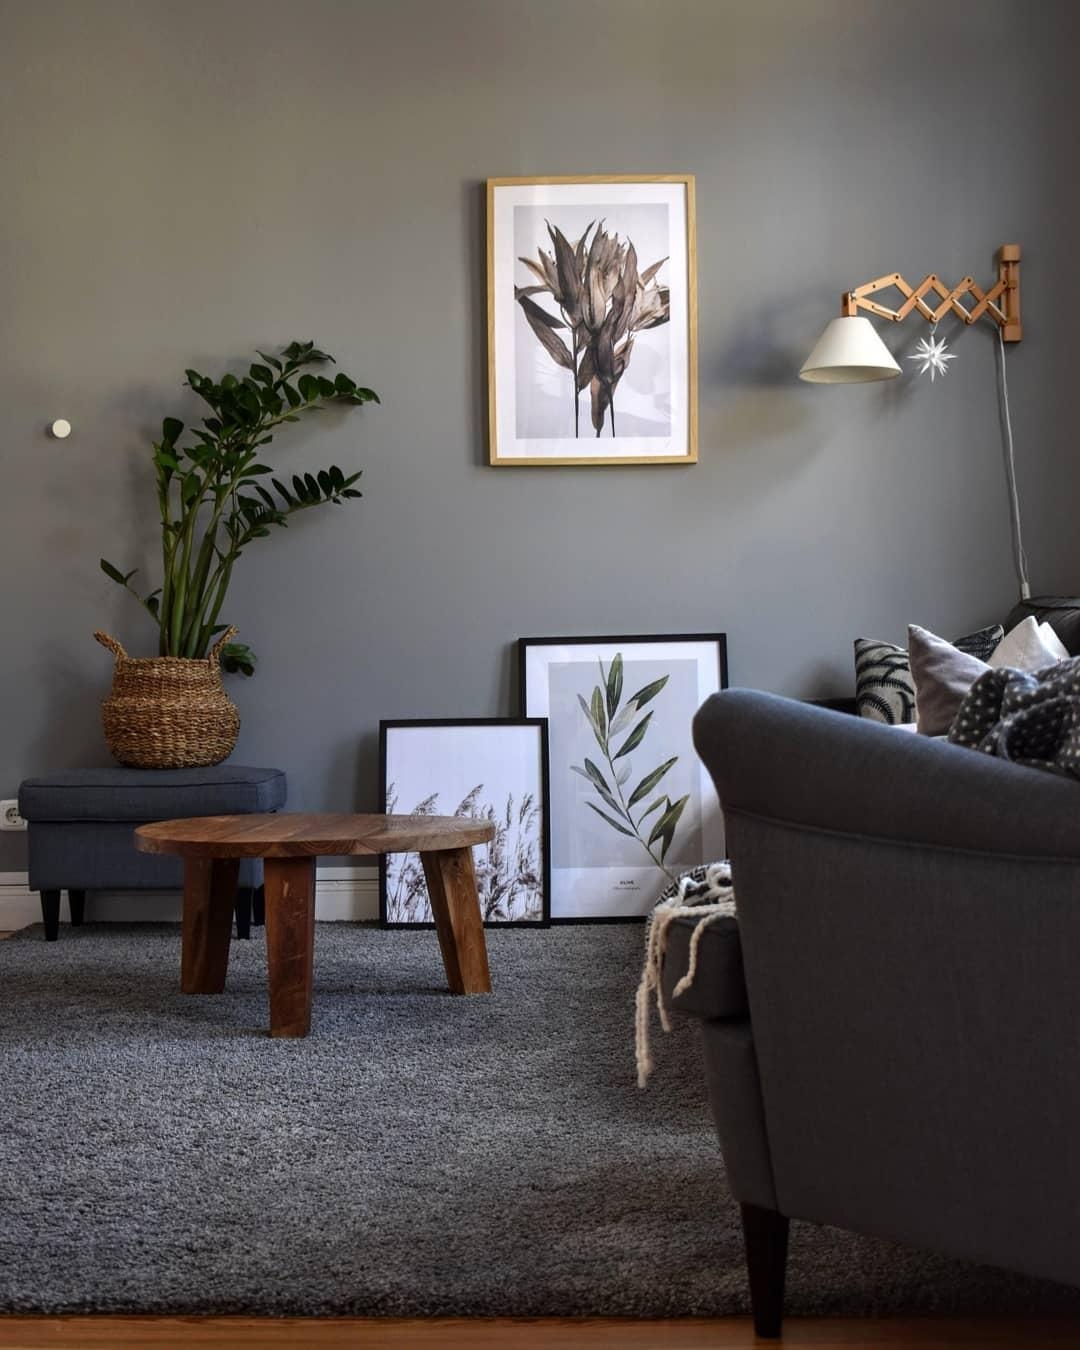 Neue Bilder im Wohnzimmer. 🌱
#wohnzimmer #wanddeko #bilder #couch #pflanzen 